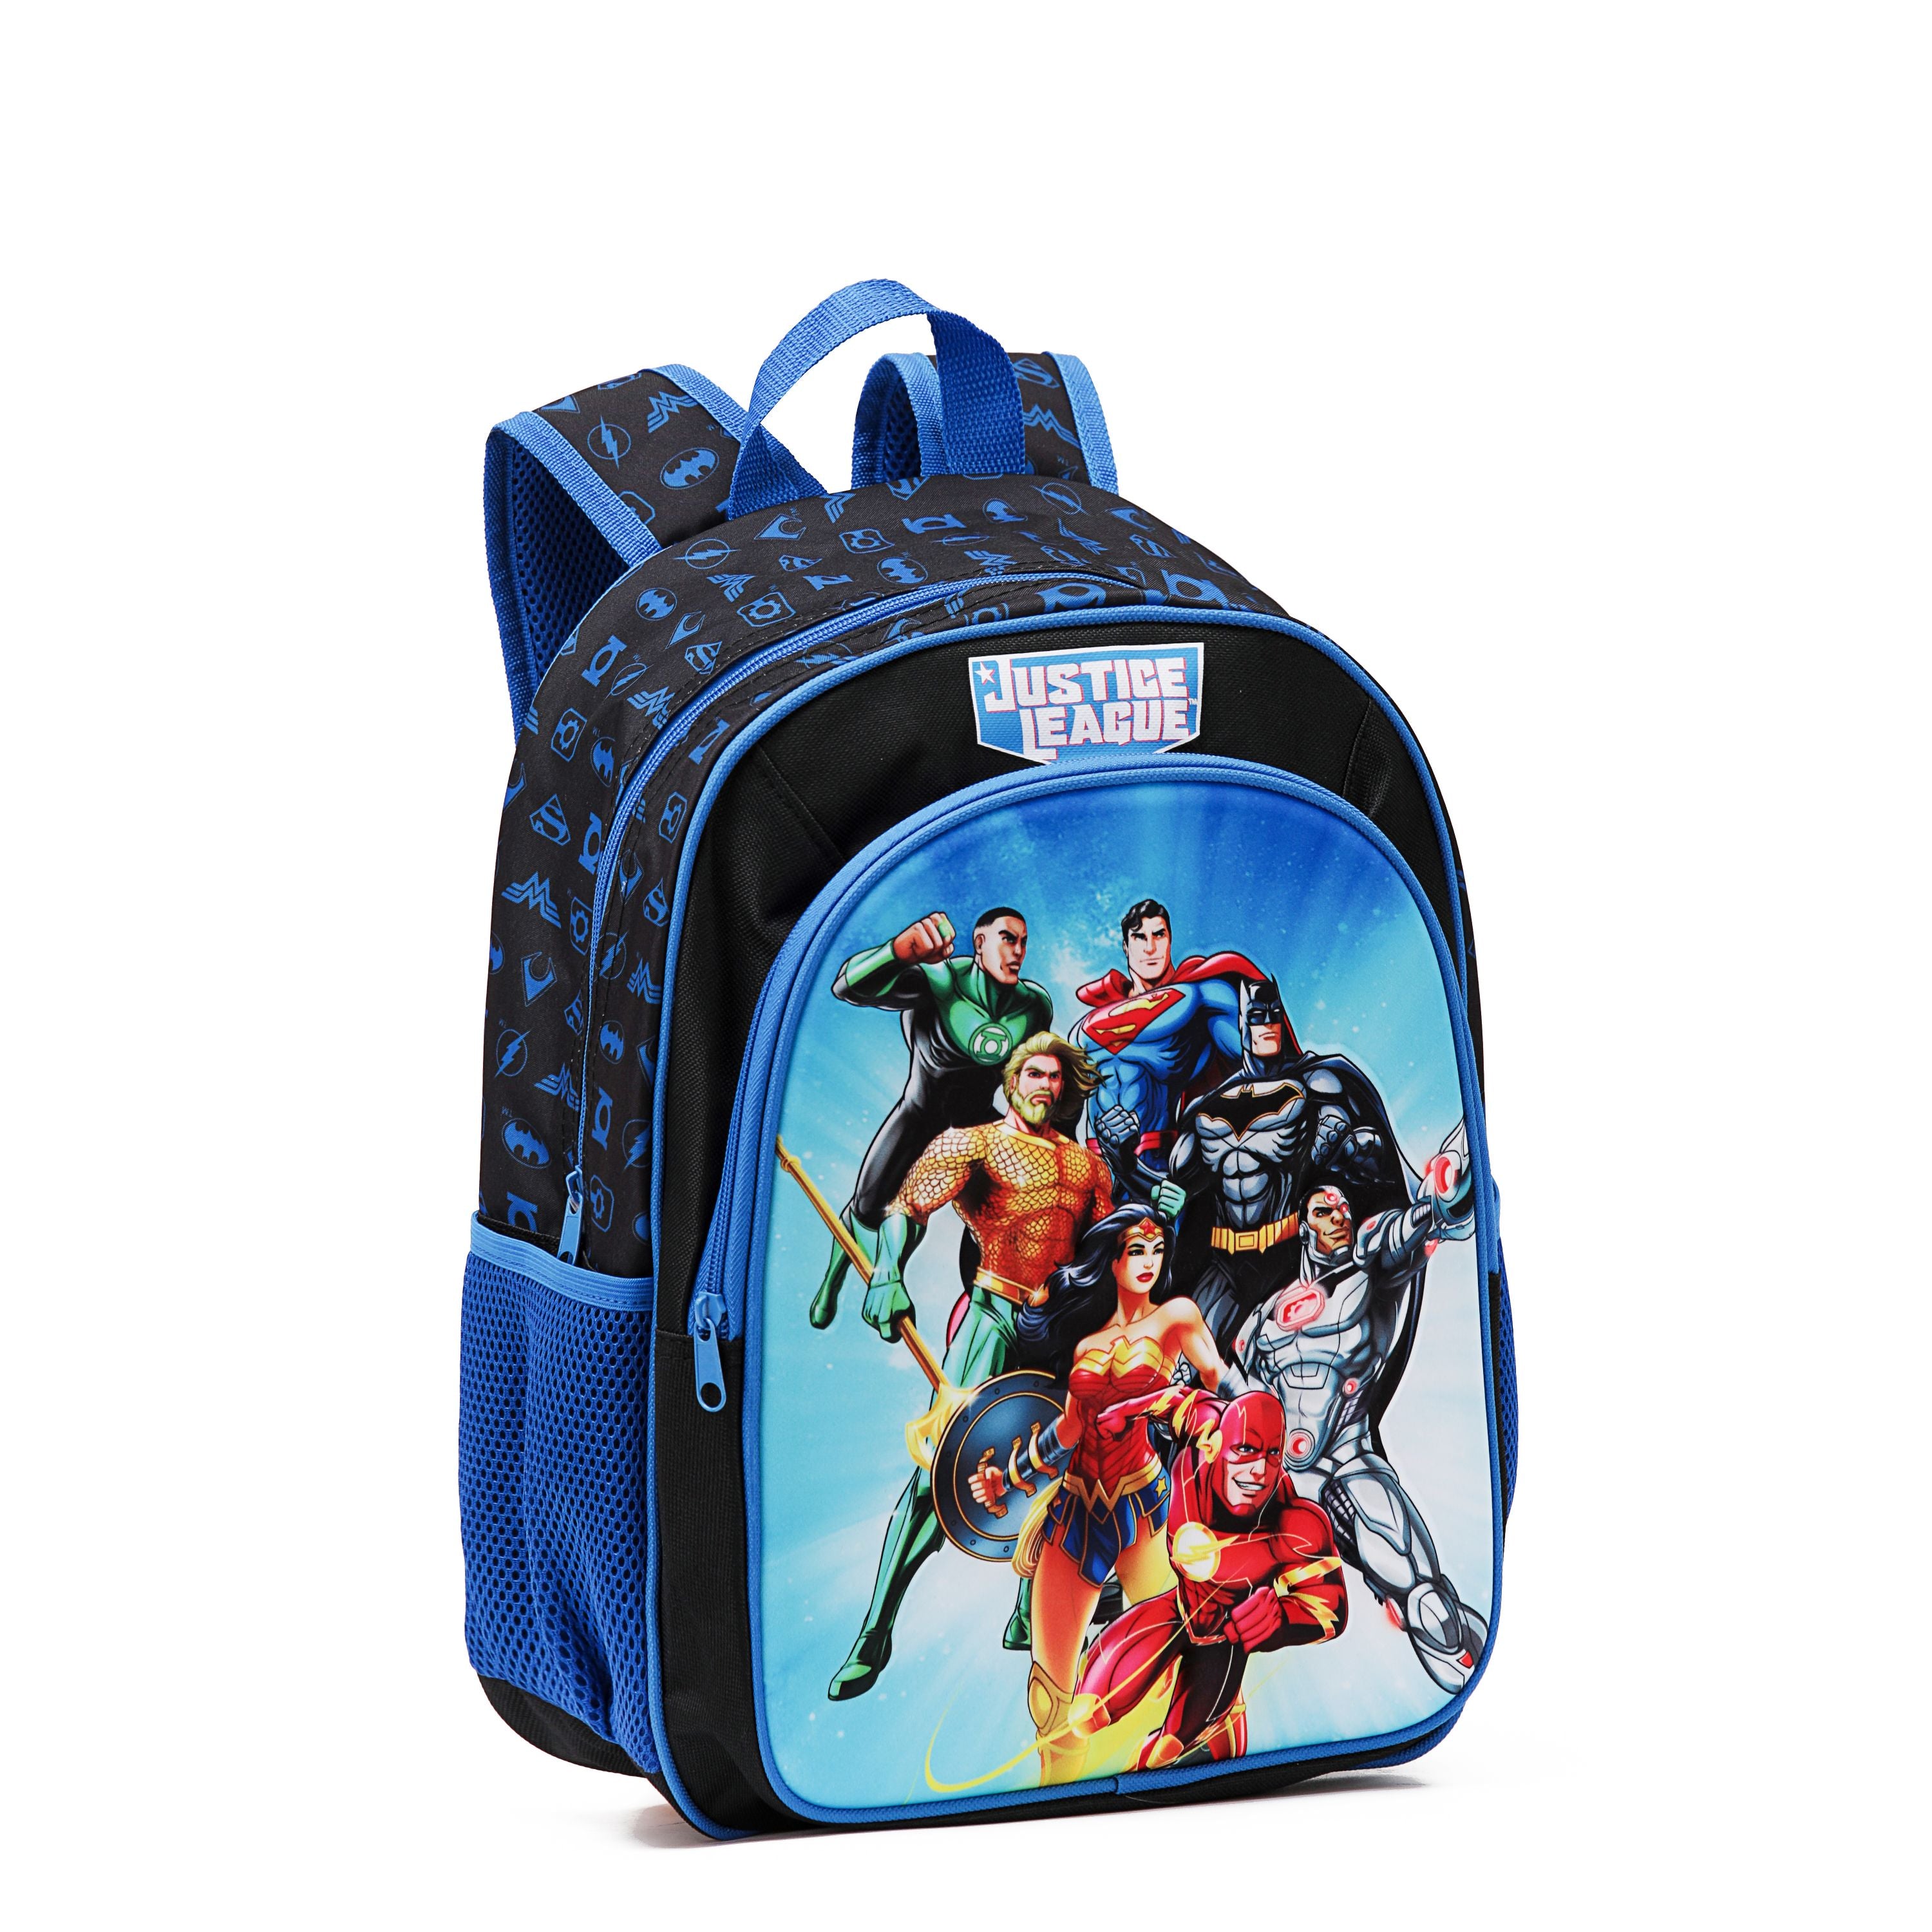 Warner Bros - 15in WB042 Justice League backpack - Black